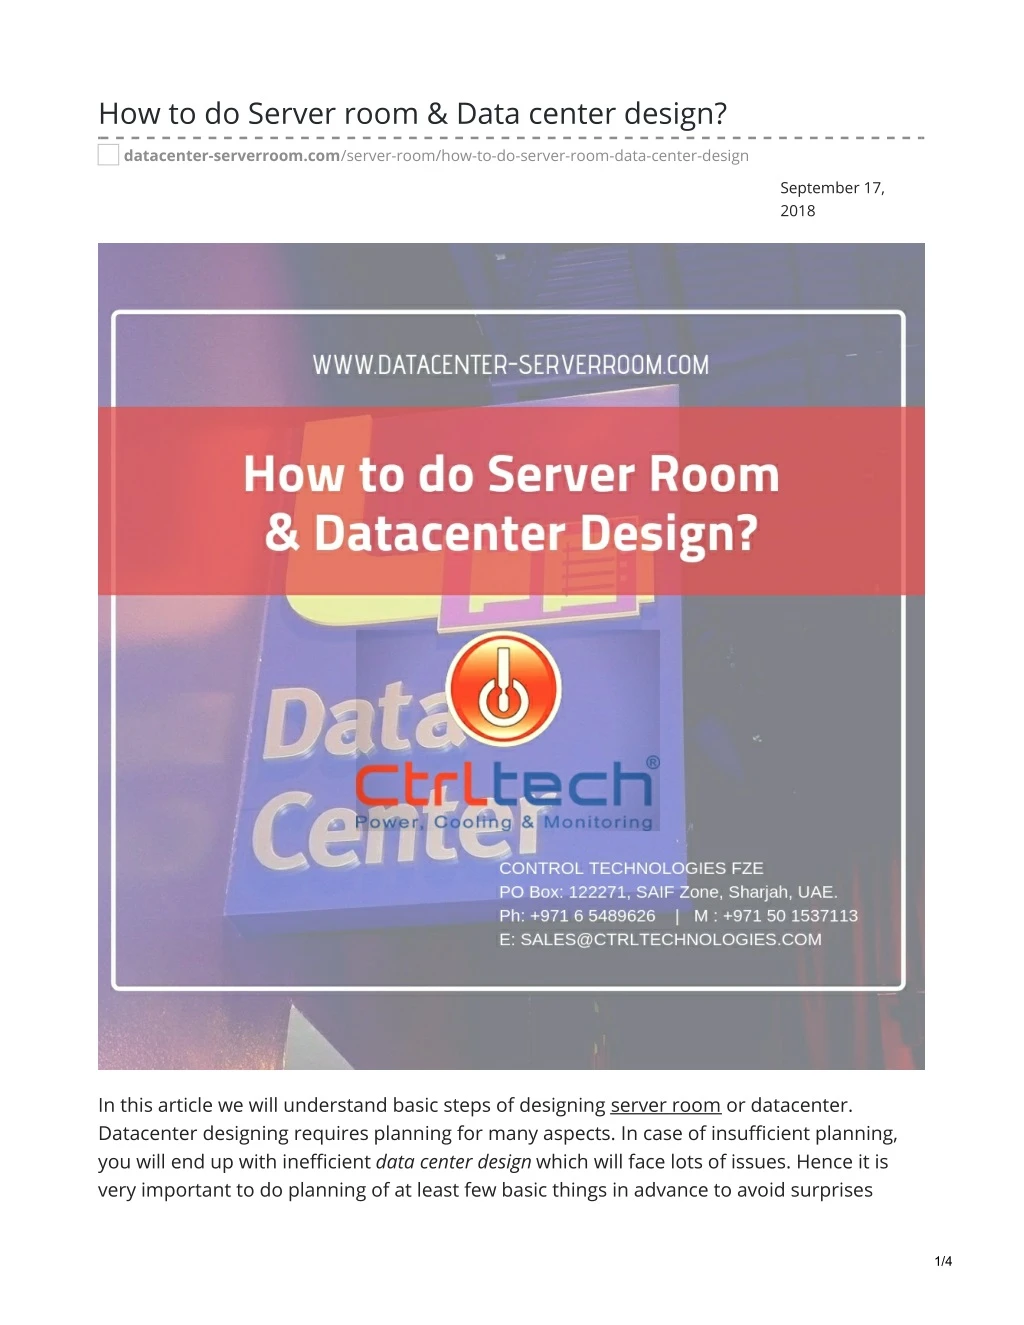 how to do server room data center design